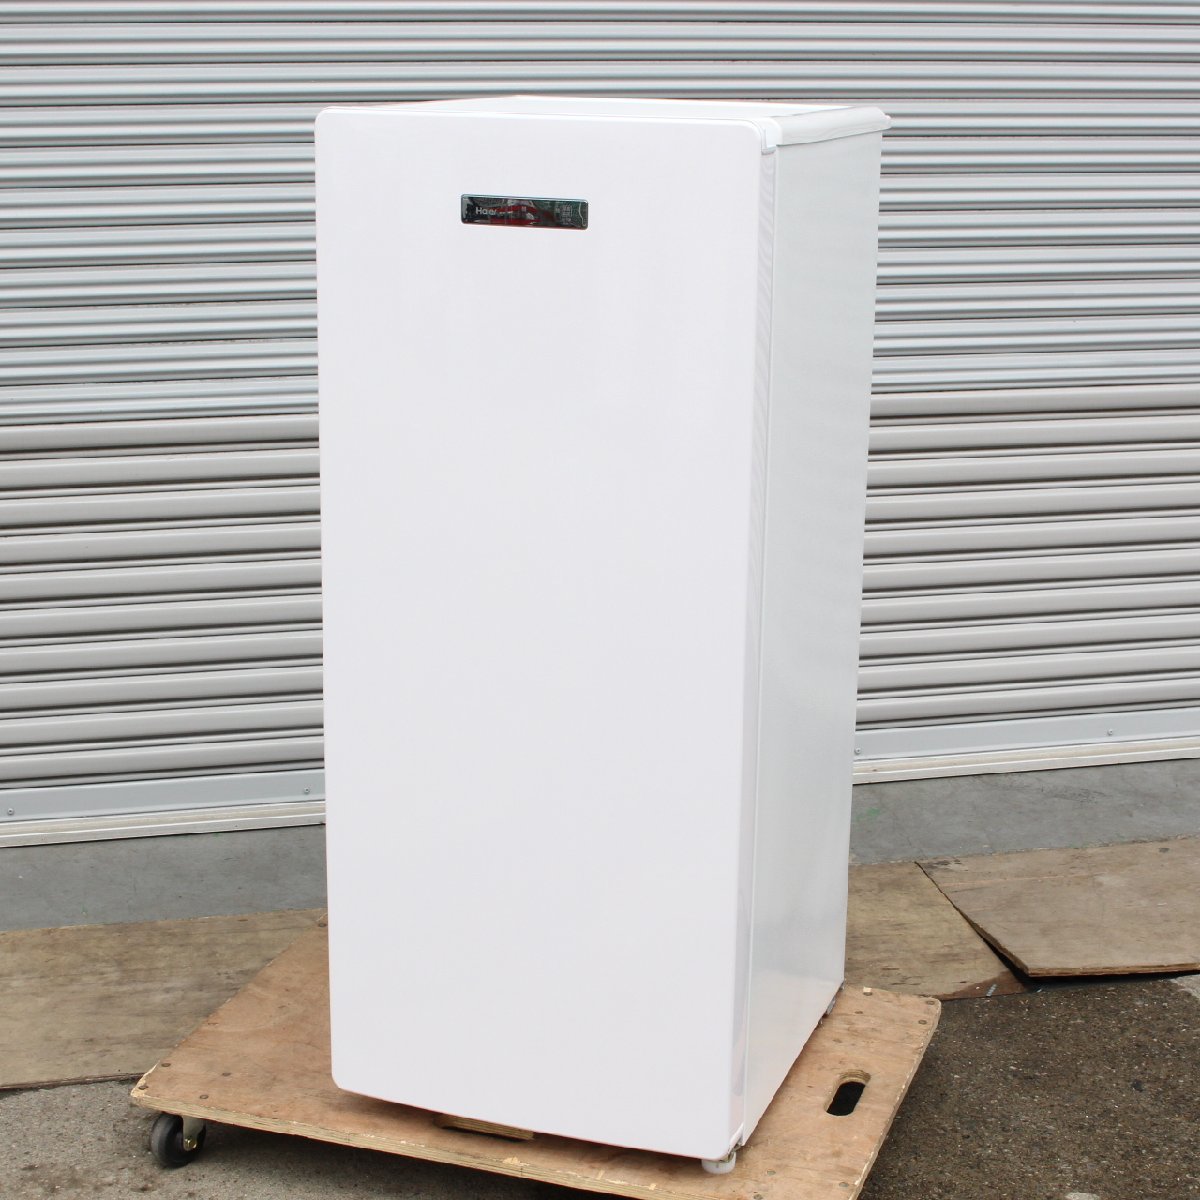 川崎市中原区にて ハイアール 電気冷凍庫 JF-NUF138B 2020年製 を出張買取させて頂きました。